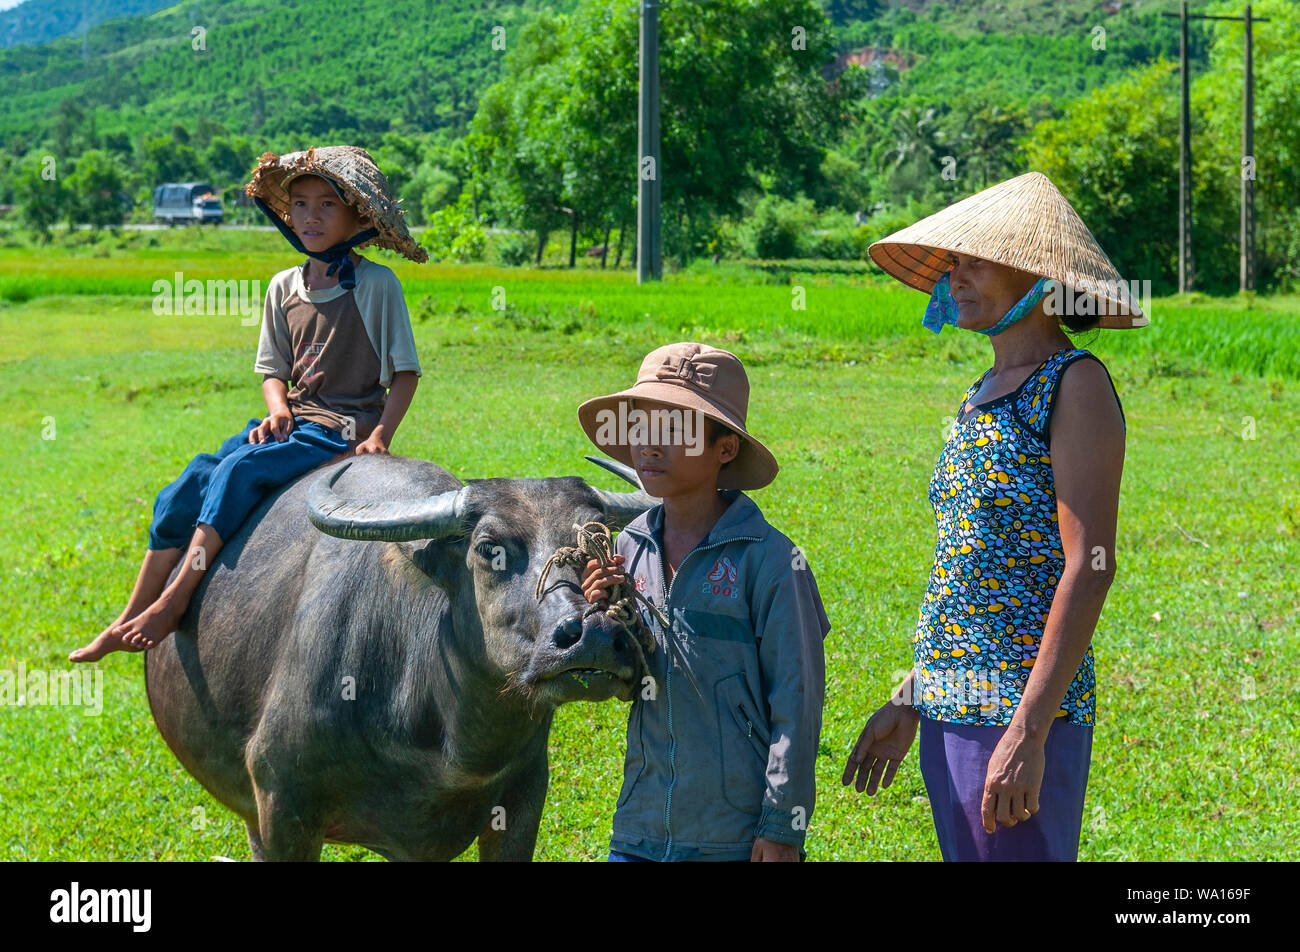 La vie rurale dans le centre du Vietnam sur la route pour Hue Hoi An avec une femme, deux enfants et une branche de buffles d'eau (Bubalus bubalis) dans une rizière. Banque D'Images